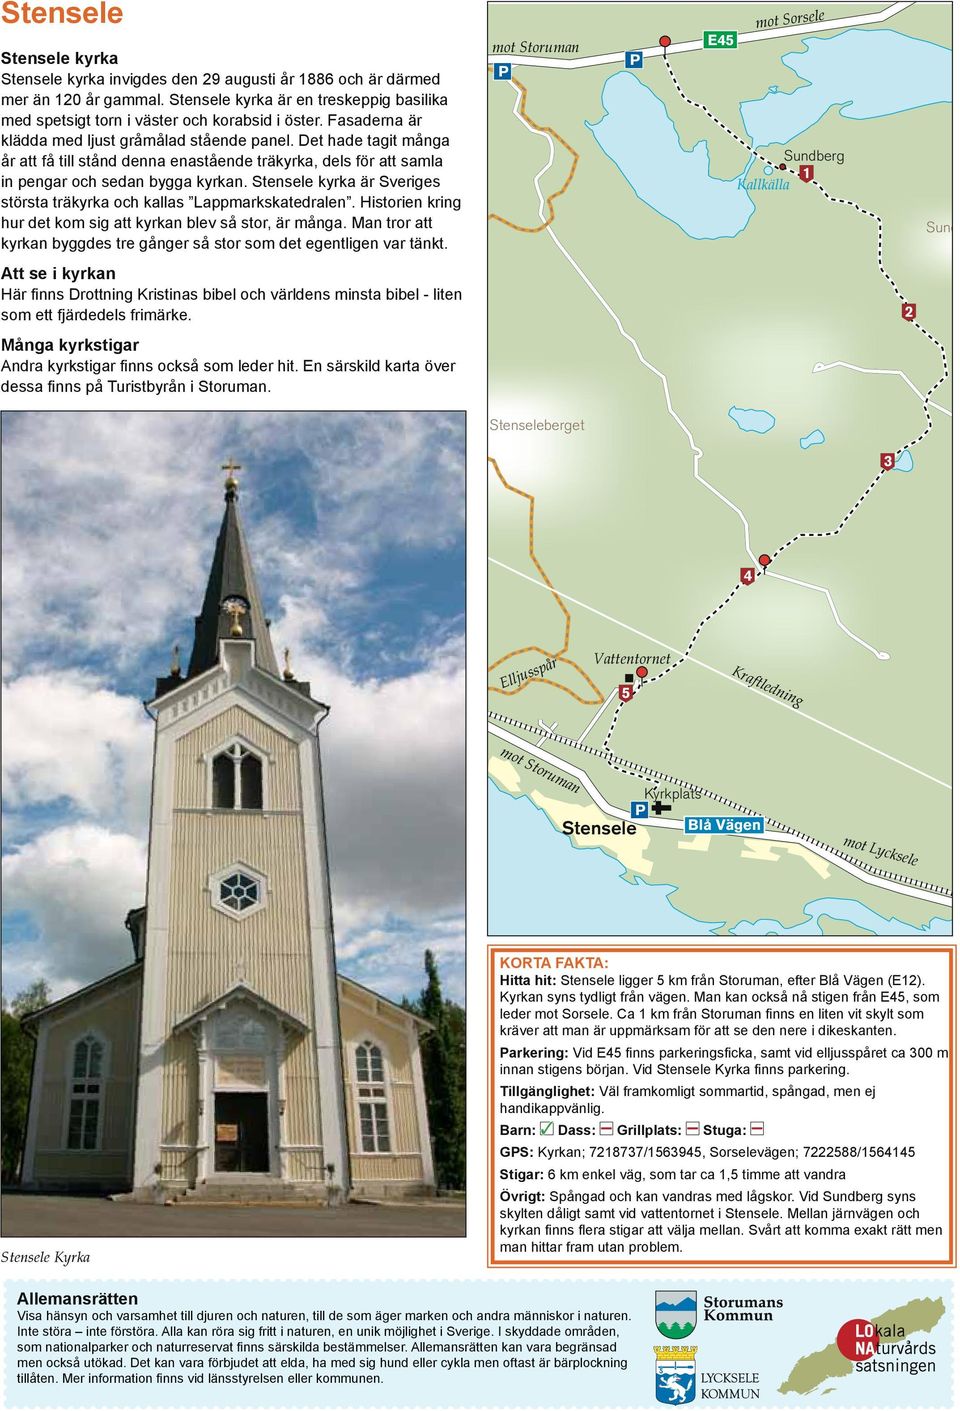 Stensele kyrka är Sveriges största träkyrka och kallas Lappmarkskatedralen. Historien kring hur det kom sig att kyrkan blev så stor, är många.